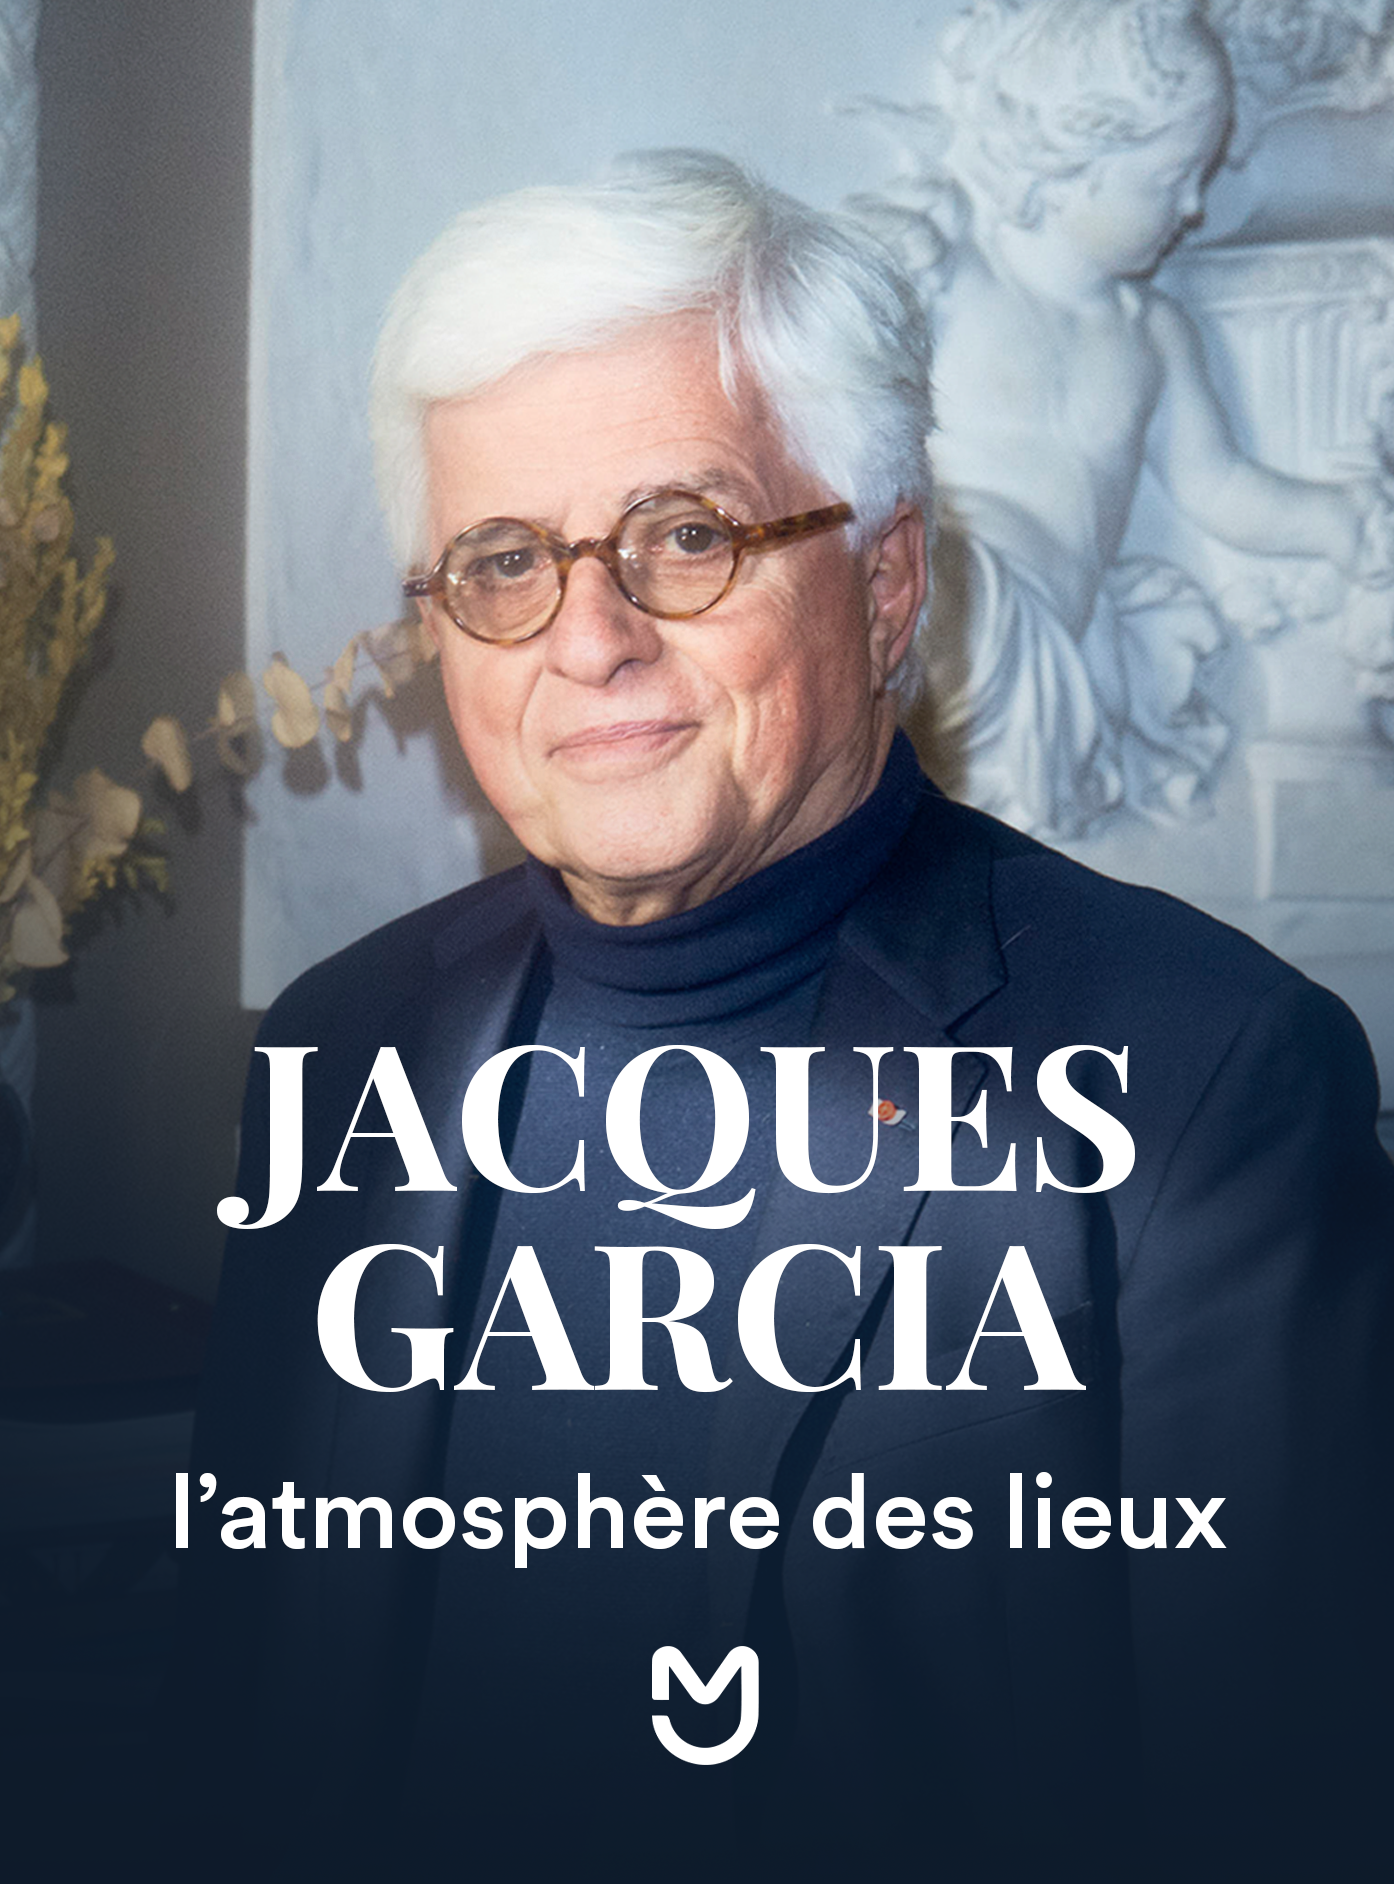 Jacques Garcia, l'atmosphère des lieux